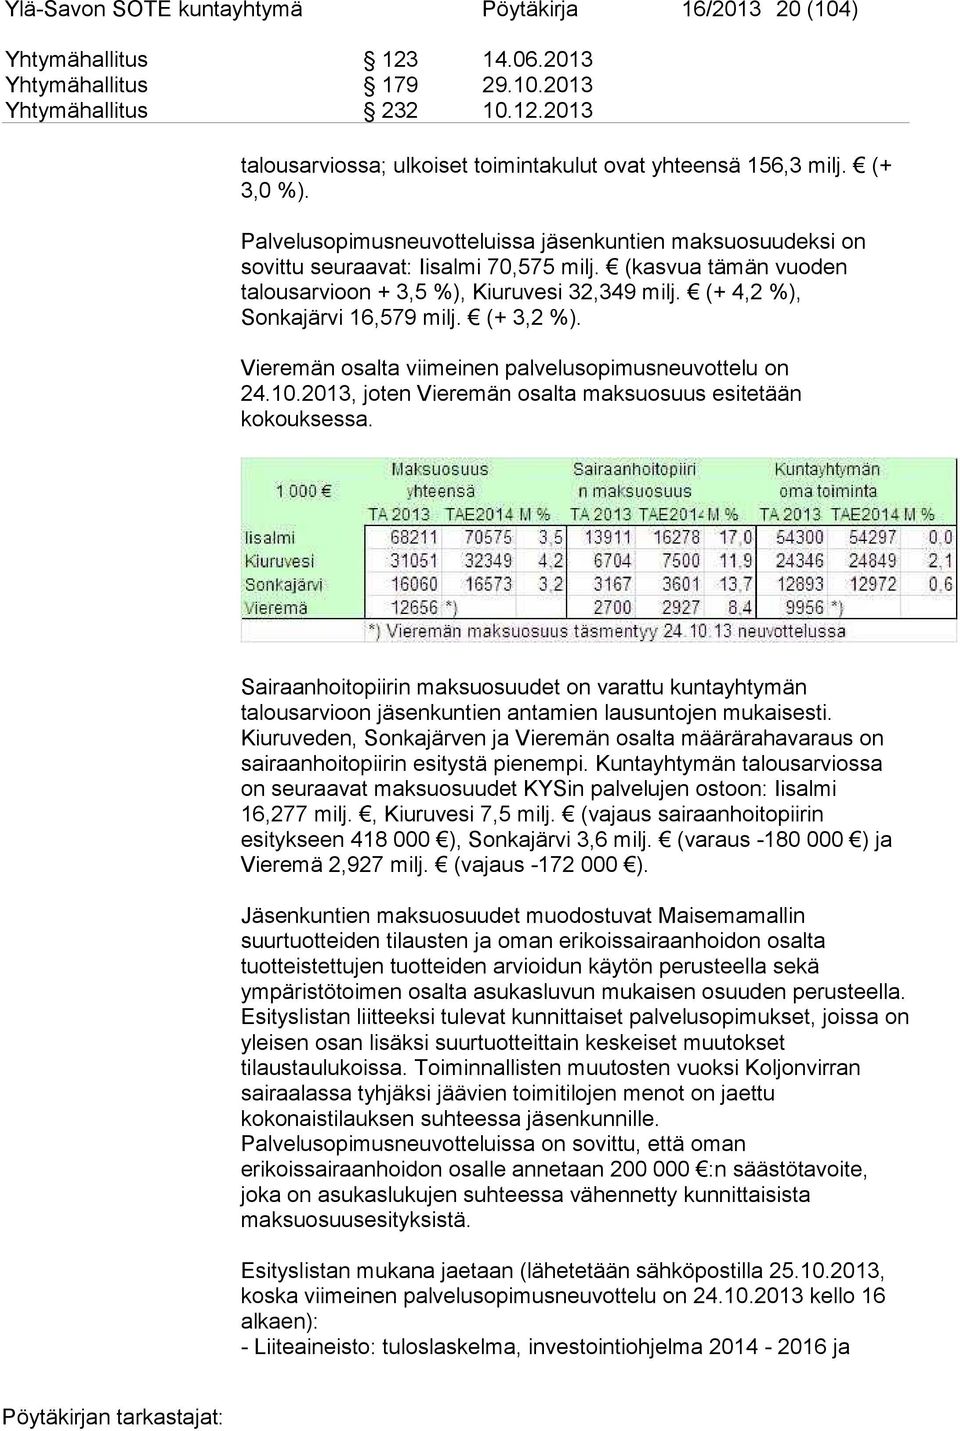 (+ 4,2 %), Sonkajärvi 16,579 milj. (+ 3,2 %). Vieremän osalta viimeinen palvelusopimusneuvottelu on 24.10.2013, joten Vieremän osalta maksuosuus esitetään kokouksessa.